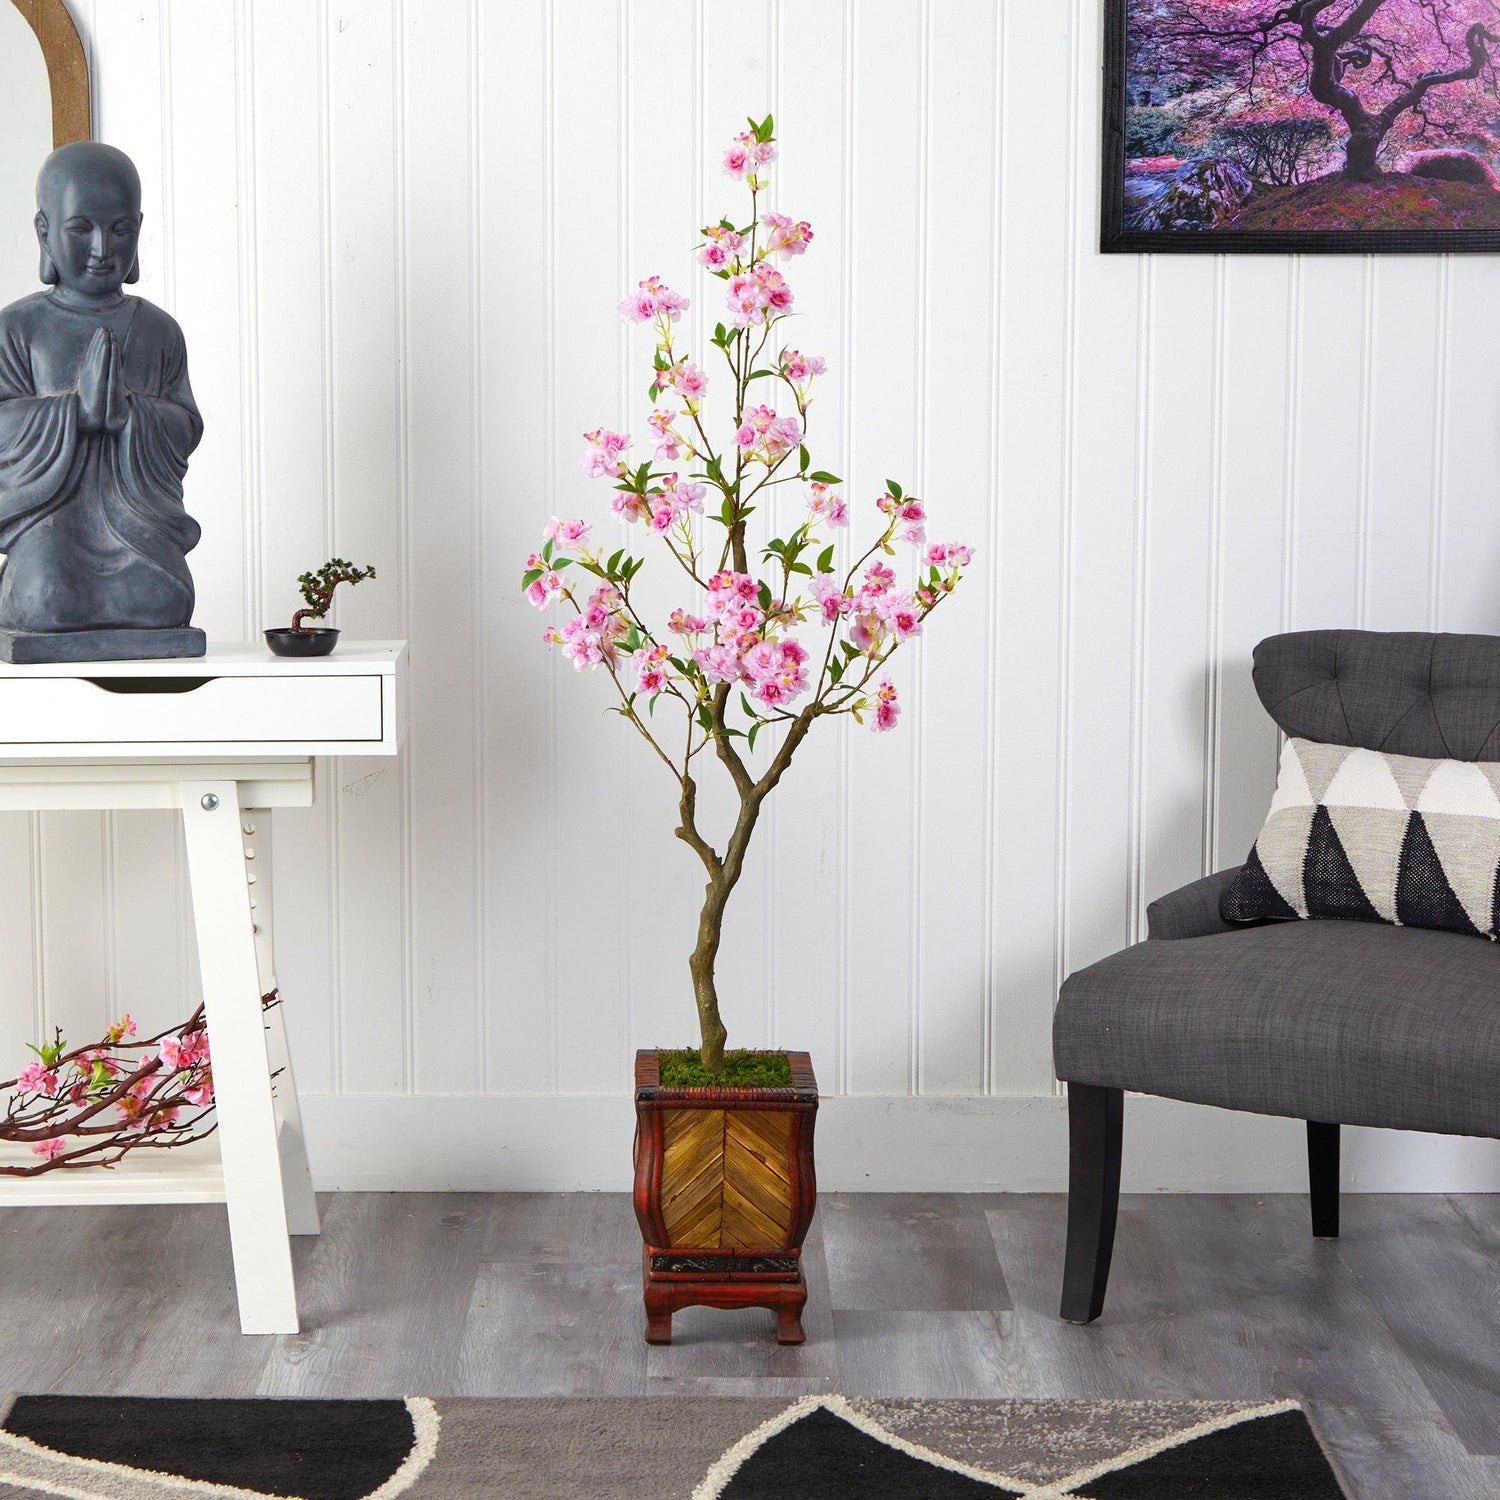 56” Cherry Blossom Artificial Tree in Decorative Planter